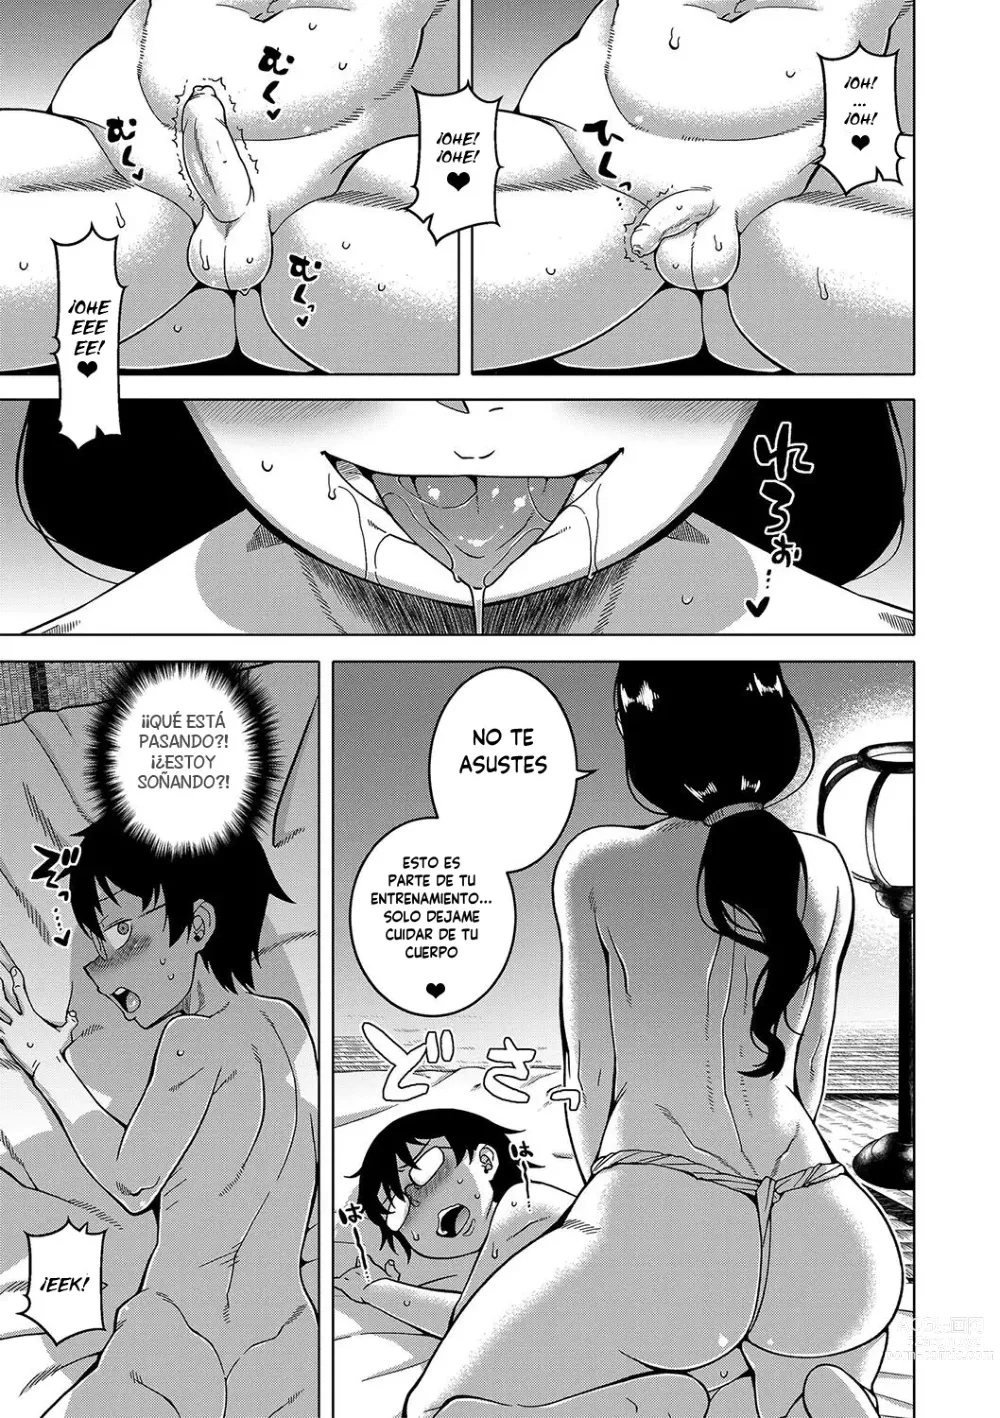 Page 20 of manga Kami-sama no Tsukurikata